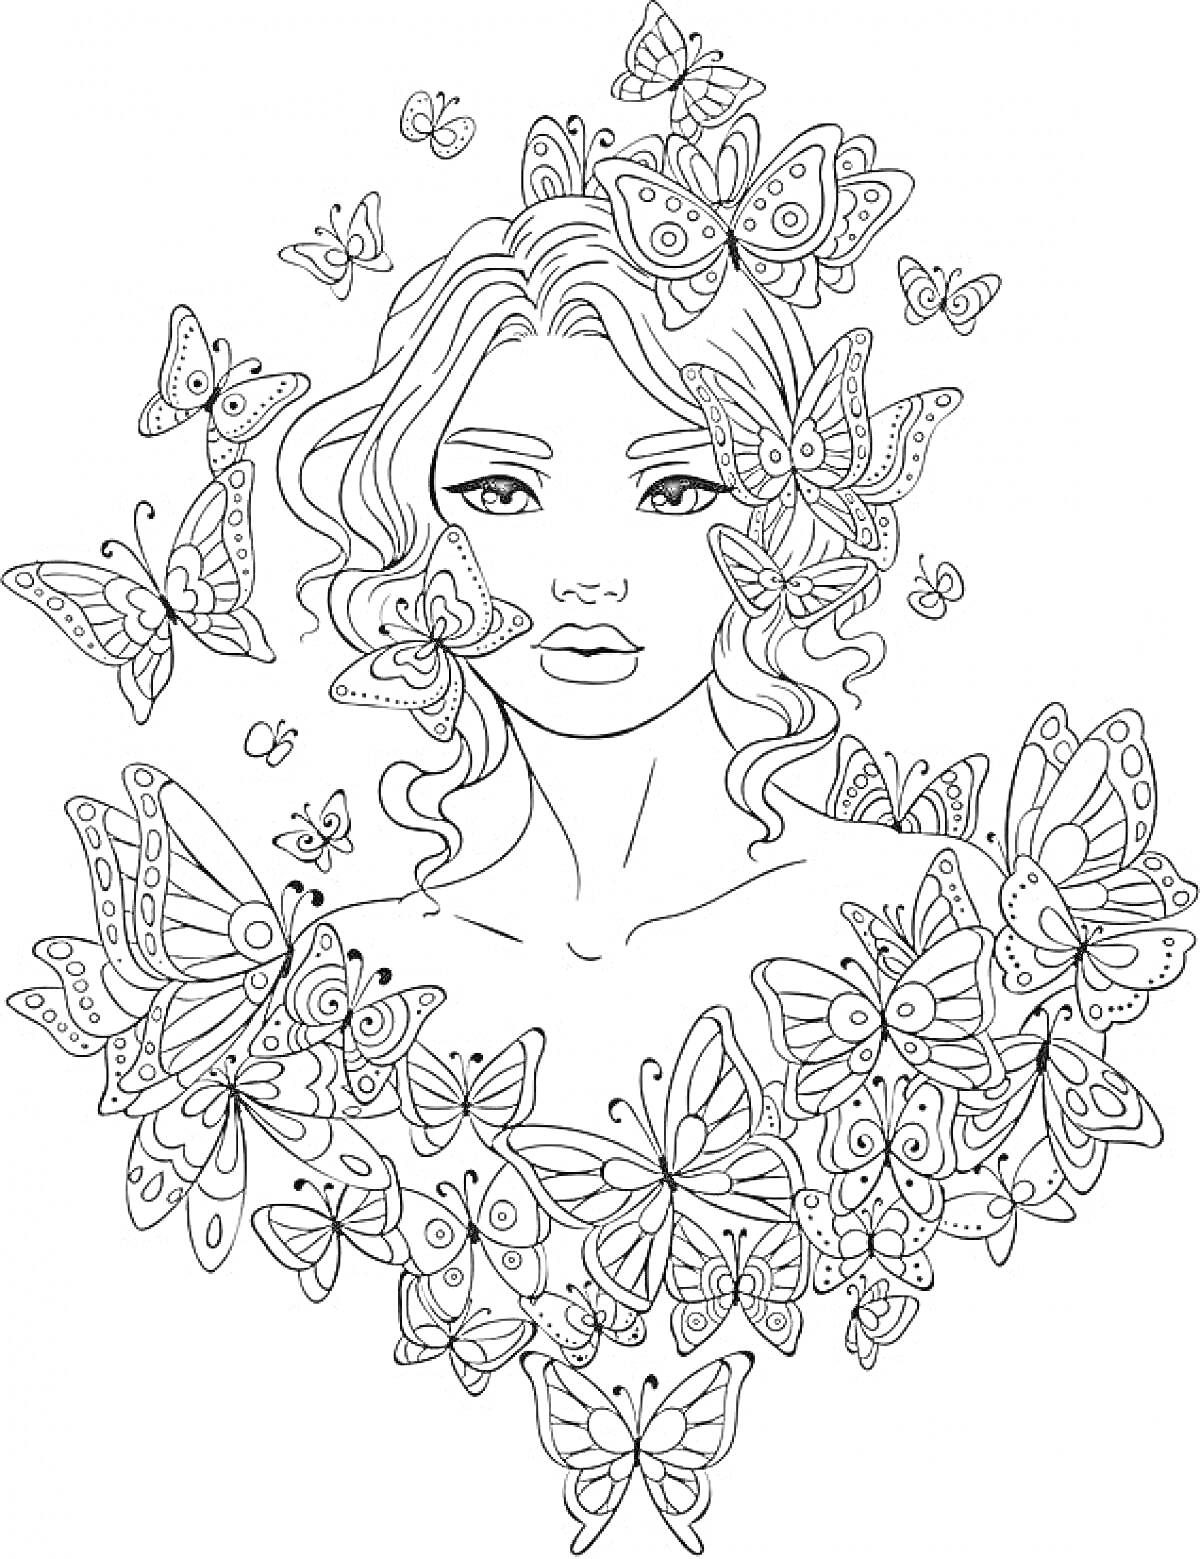 Раскраска Женский портрет с бабочками вокруг